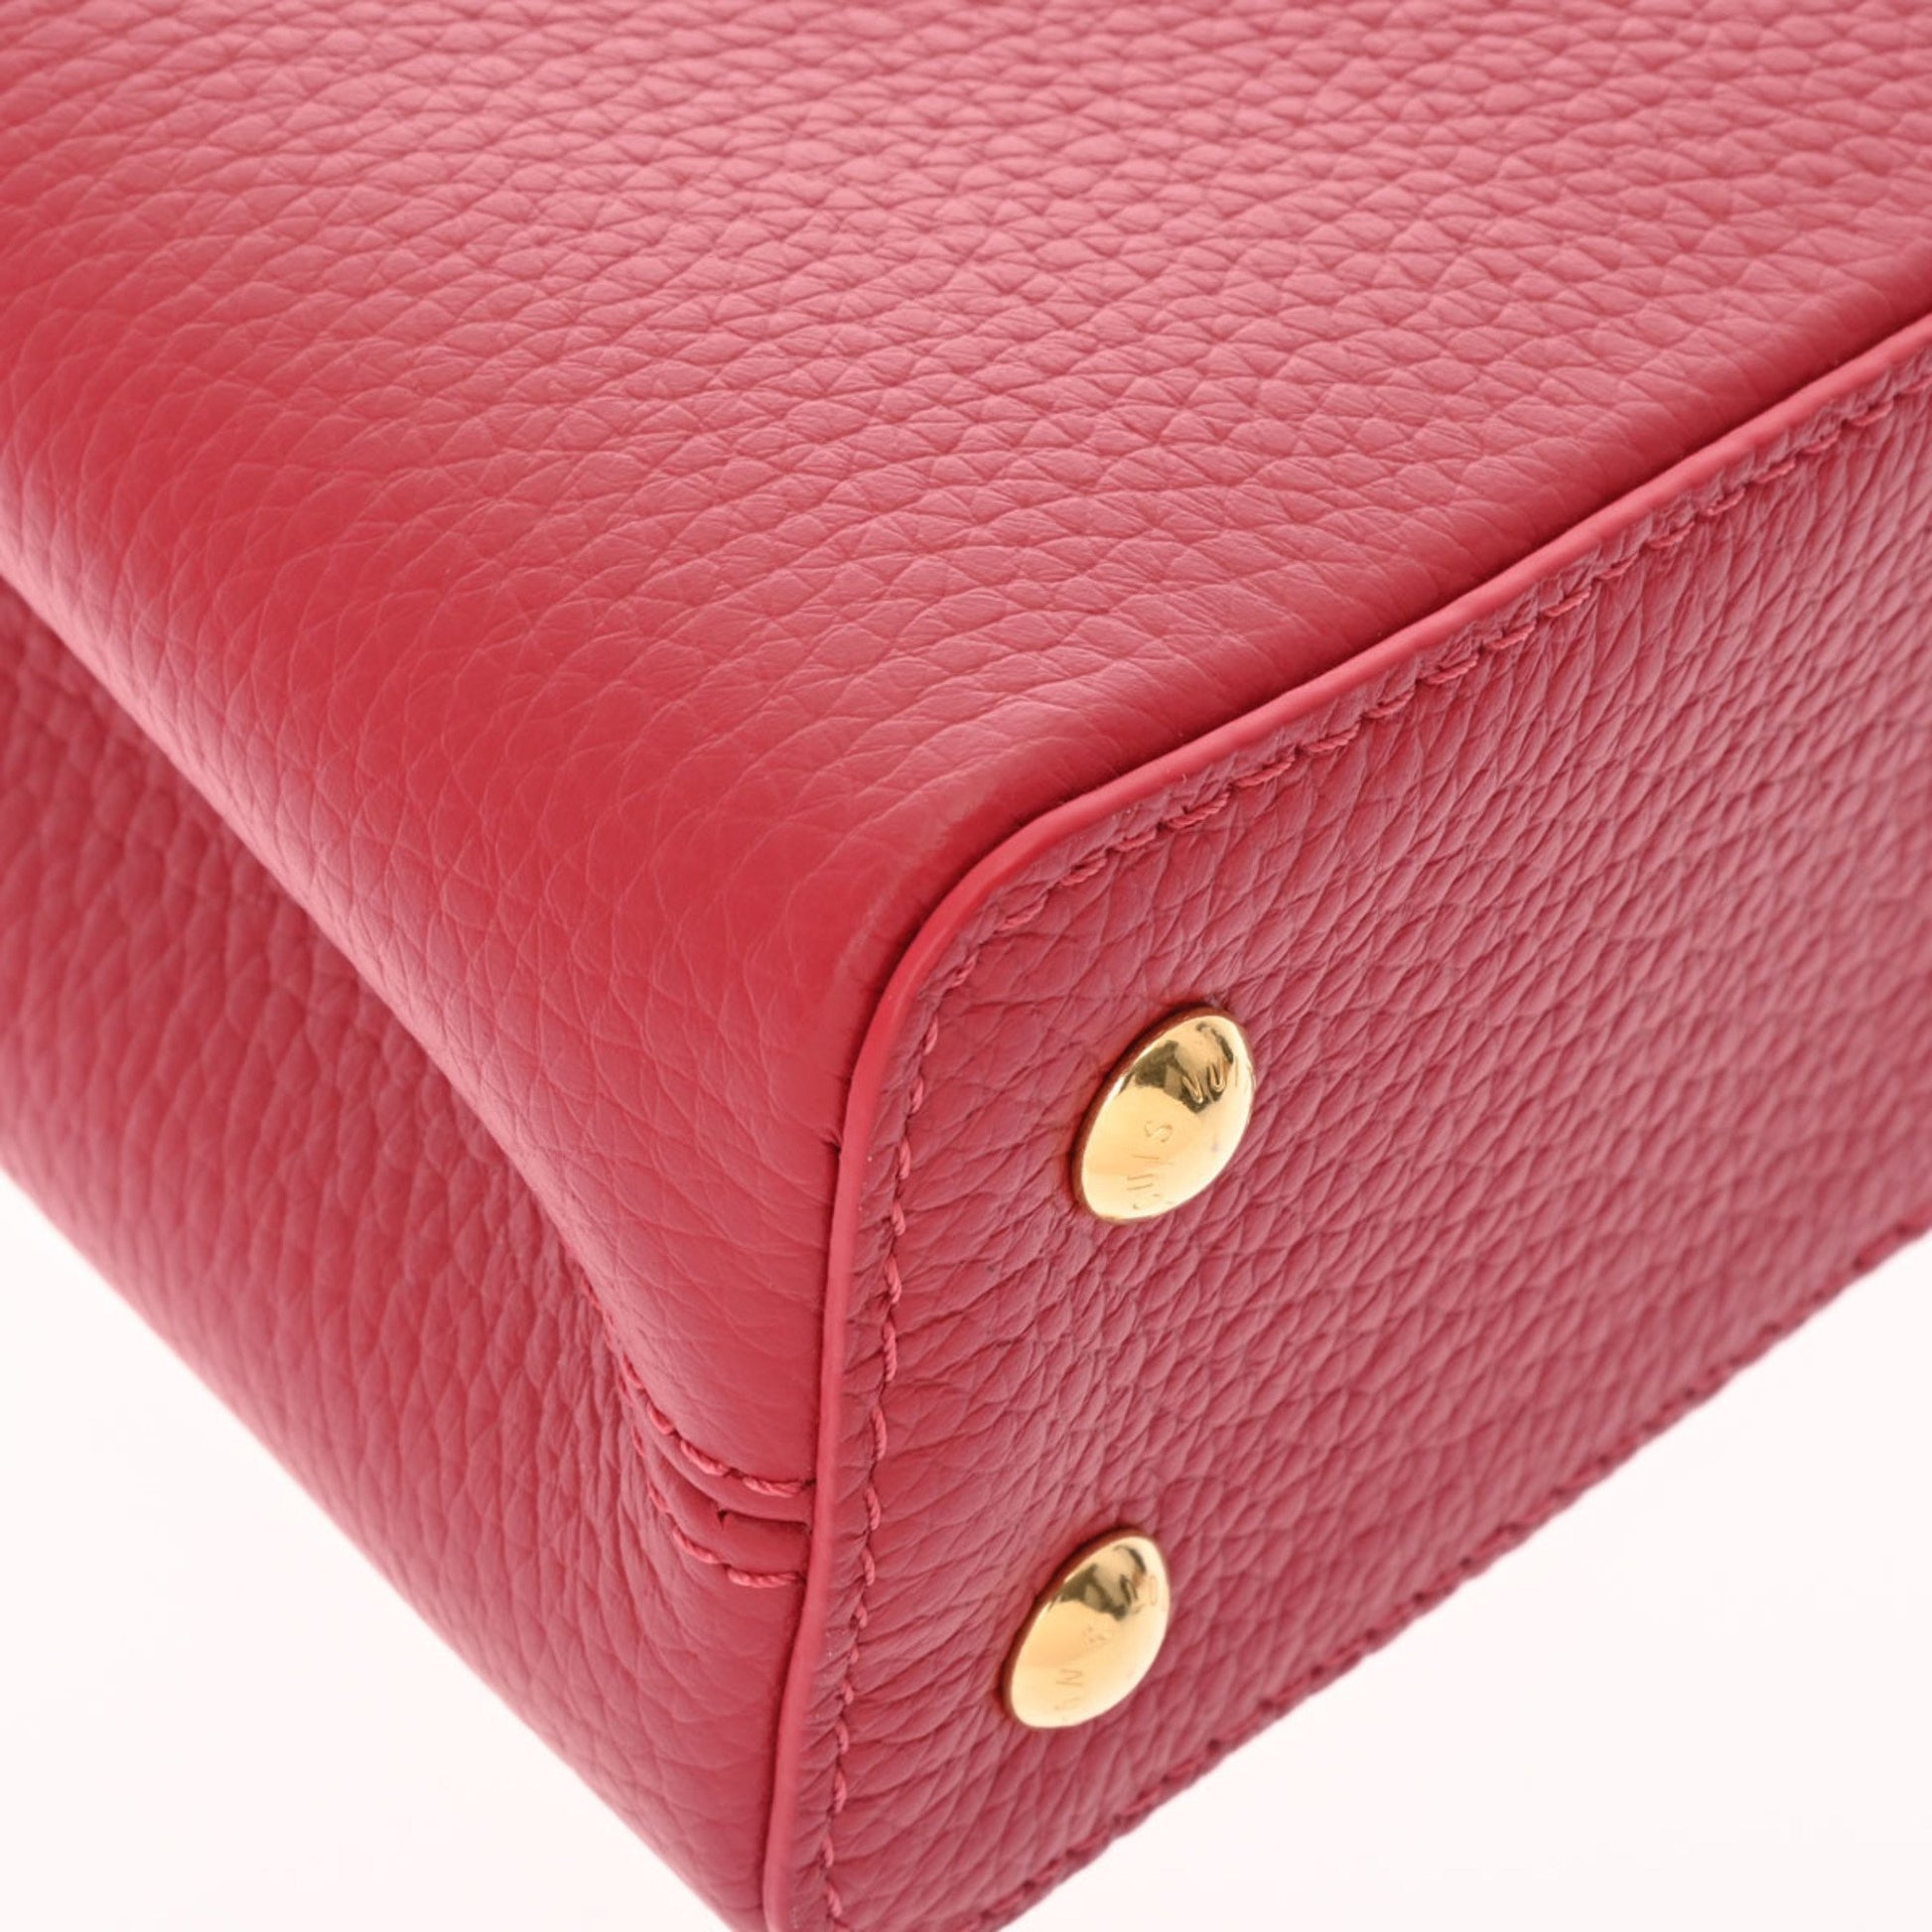 Louis Vuitton LOUIS VUITTON Capucine Mini Bag Taurillon Leather Scarlet  M56845